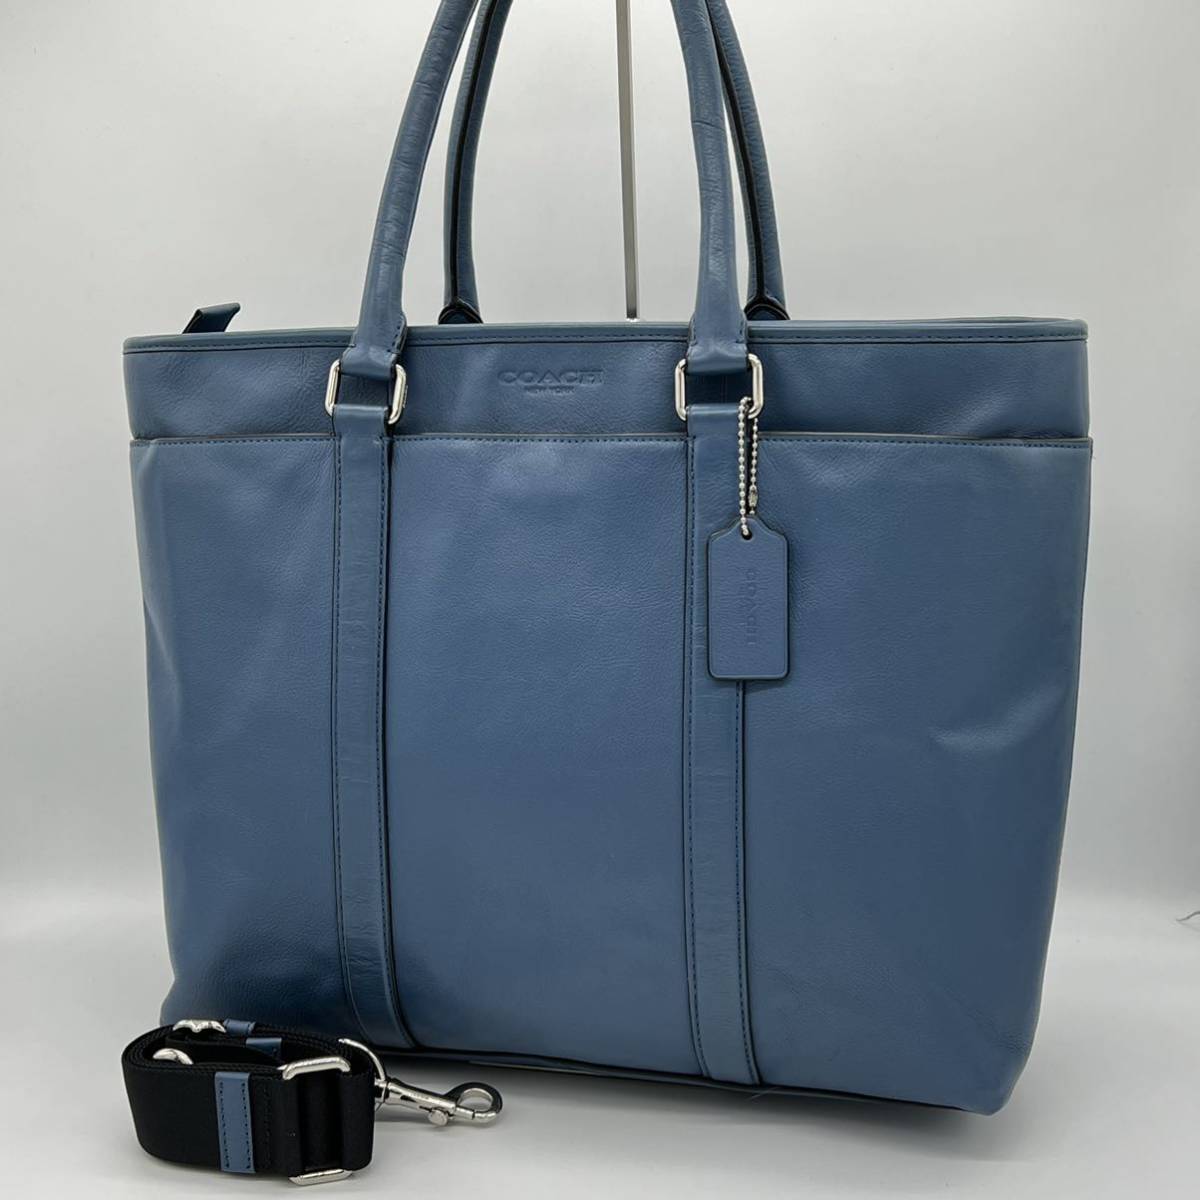 【美品】COACH コーチ メトロポリタン ハンドバッグ 2way トートバッグ ビジネスバッグ 手持ち 手提げかばん シンプル ブルー AI451106E